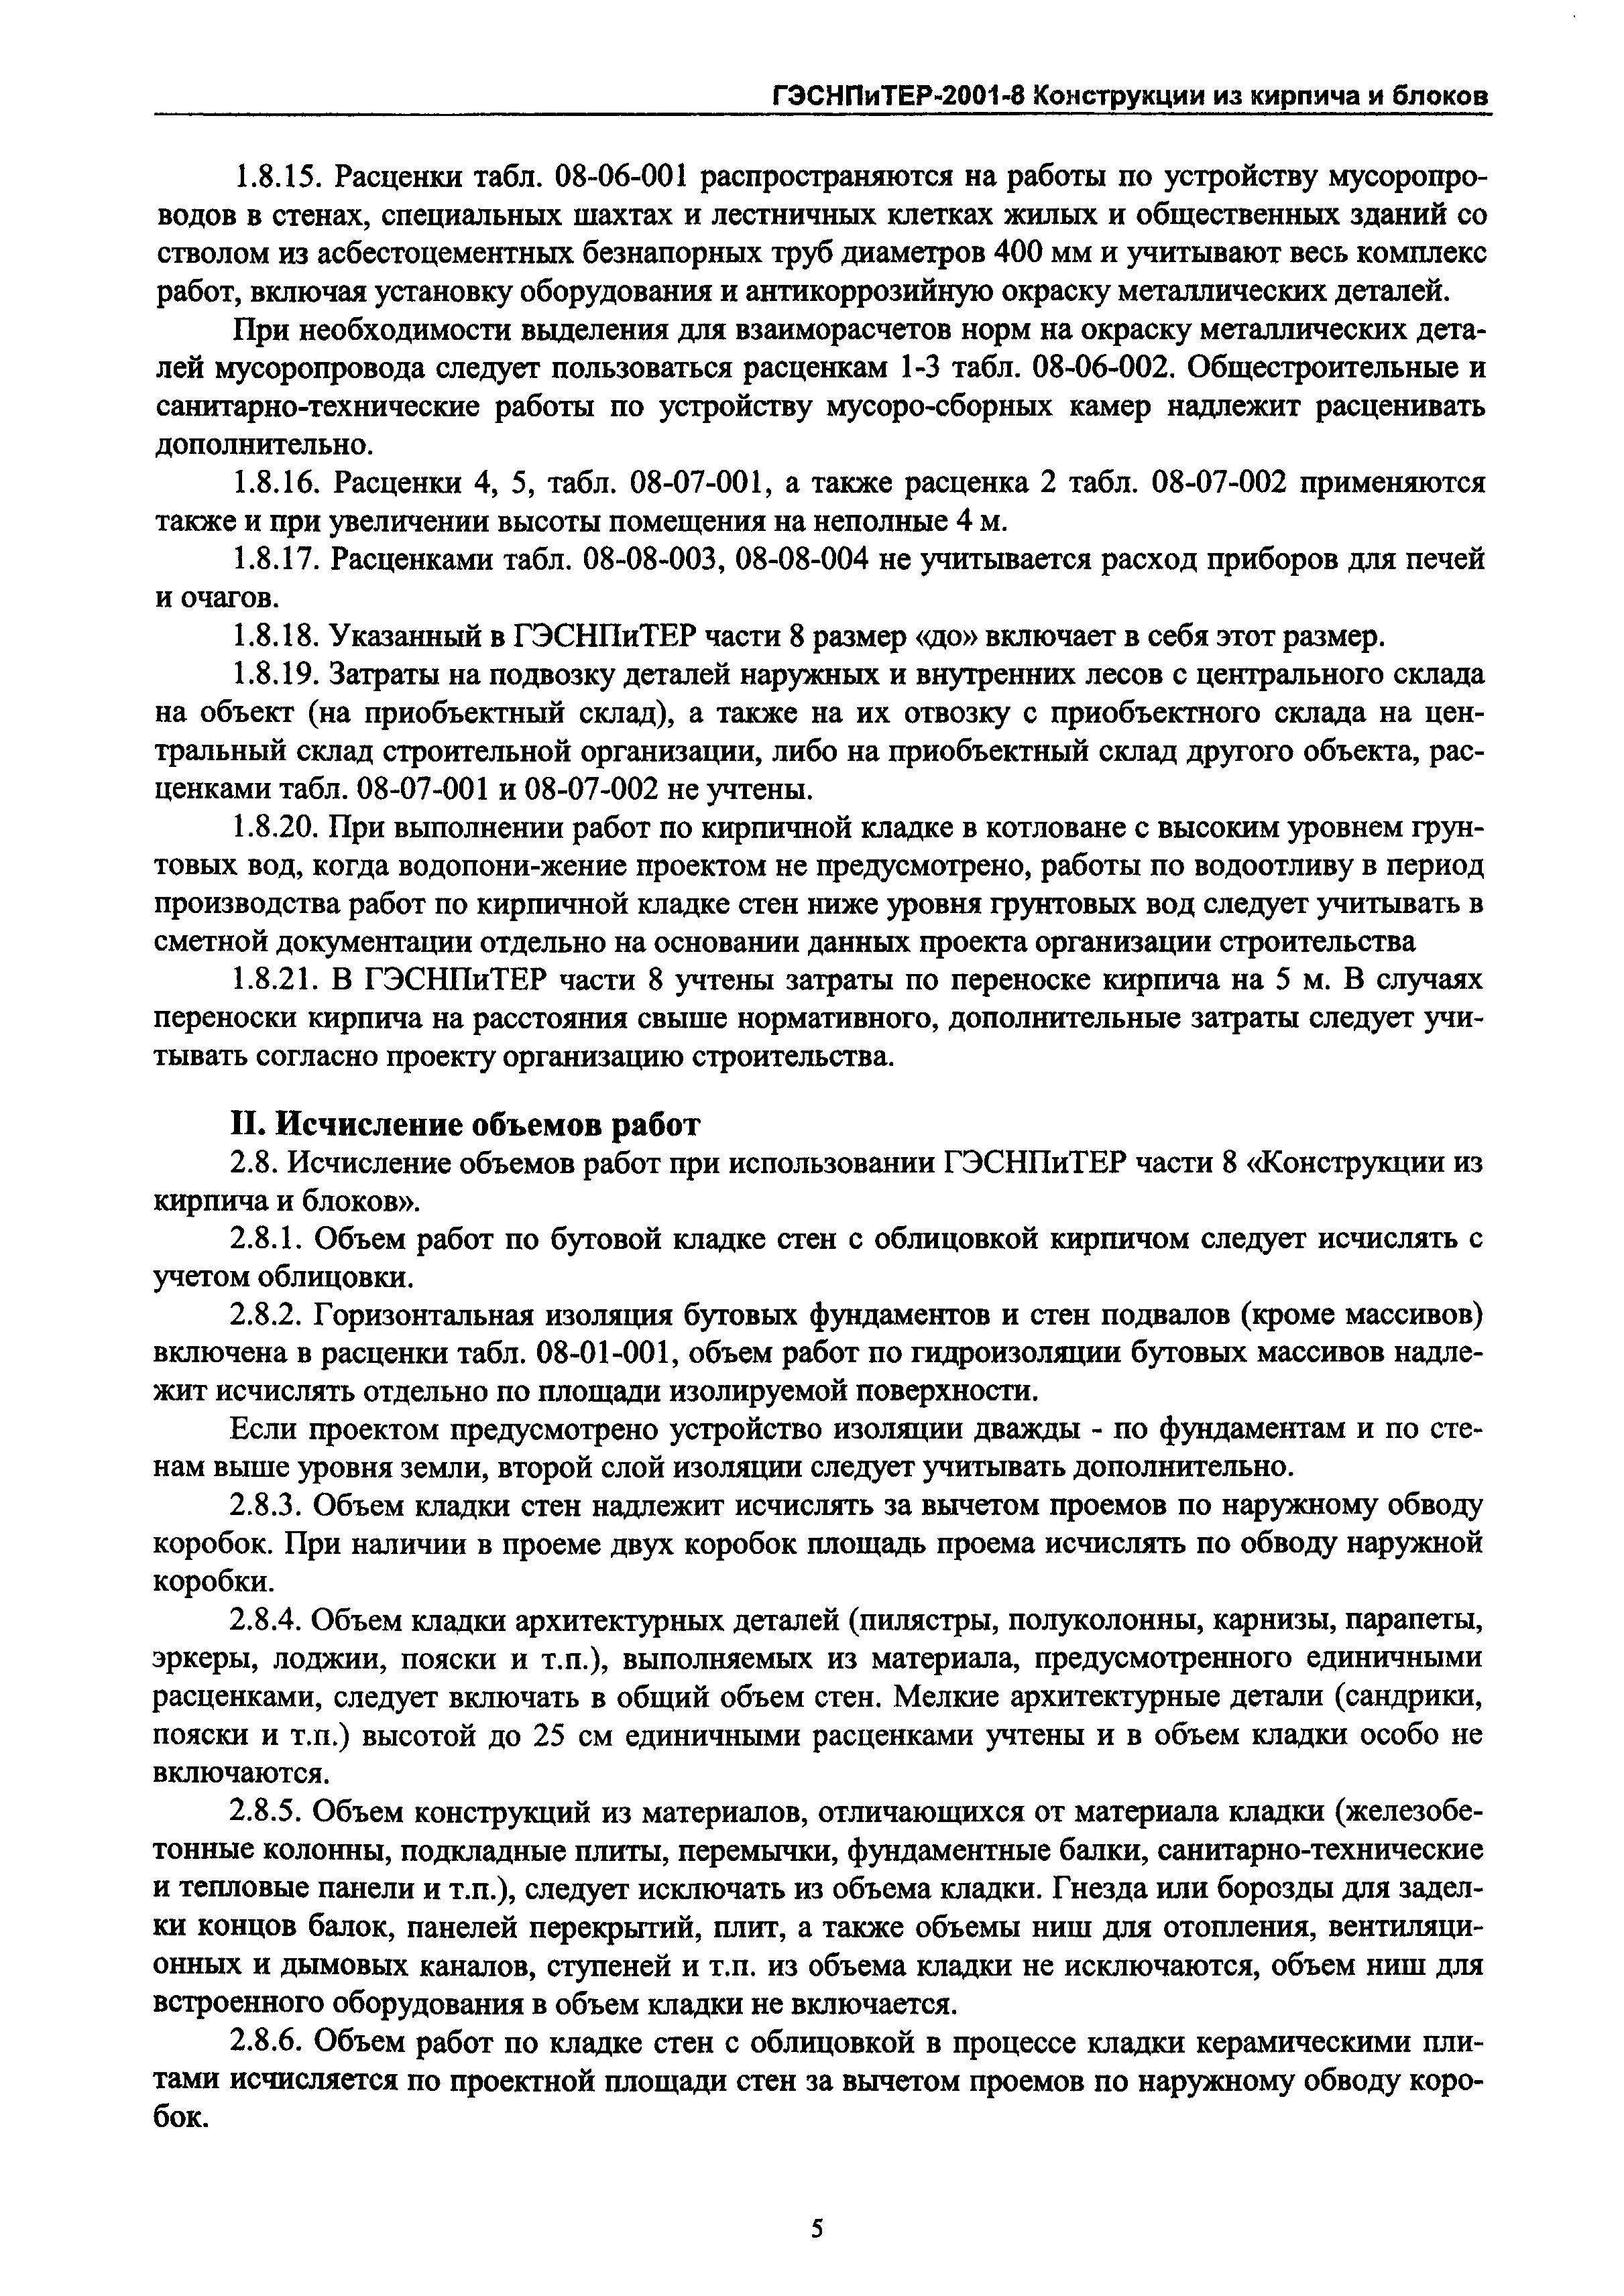 ГЭСНПиТЕР 2001-8 Московской области